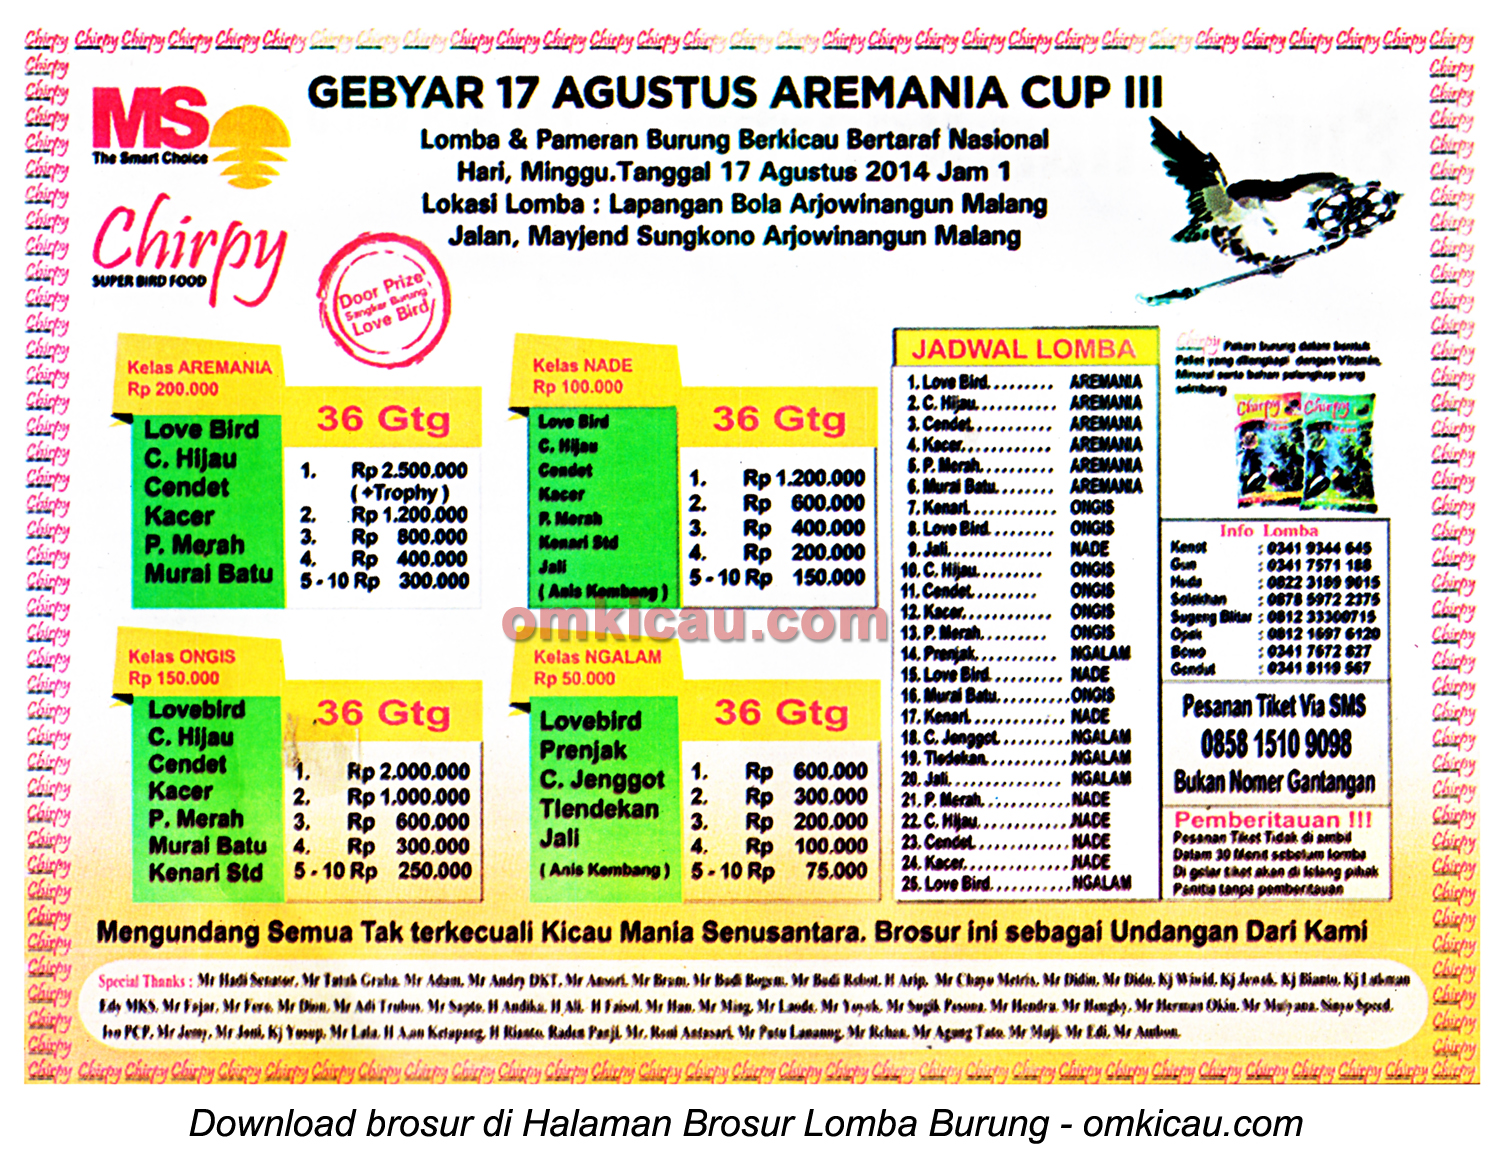 Brosur Lomba Burung Berkicau Gebyar 17 Agustus Aremania Cup III, Malang, 17 Agrustus 2014